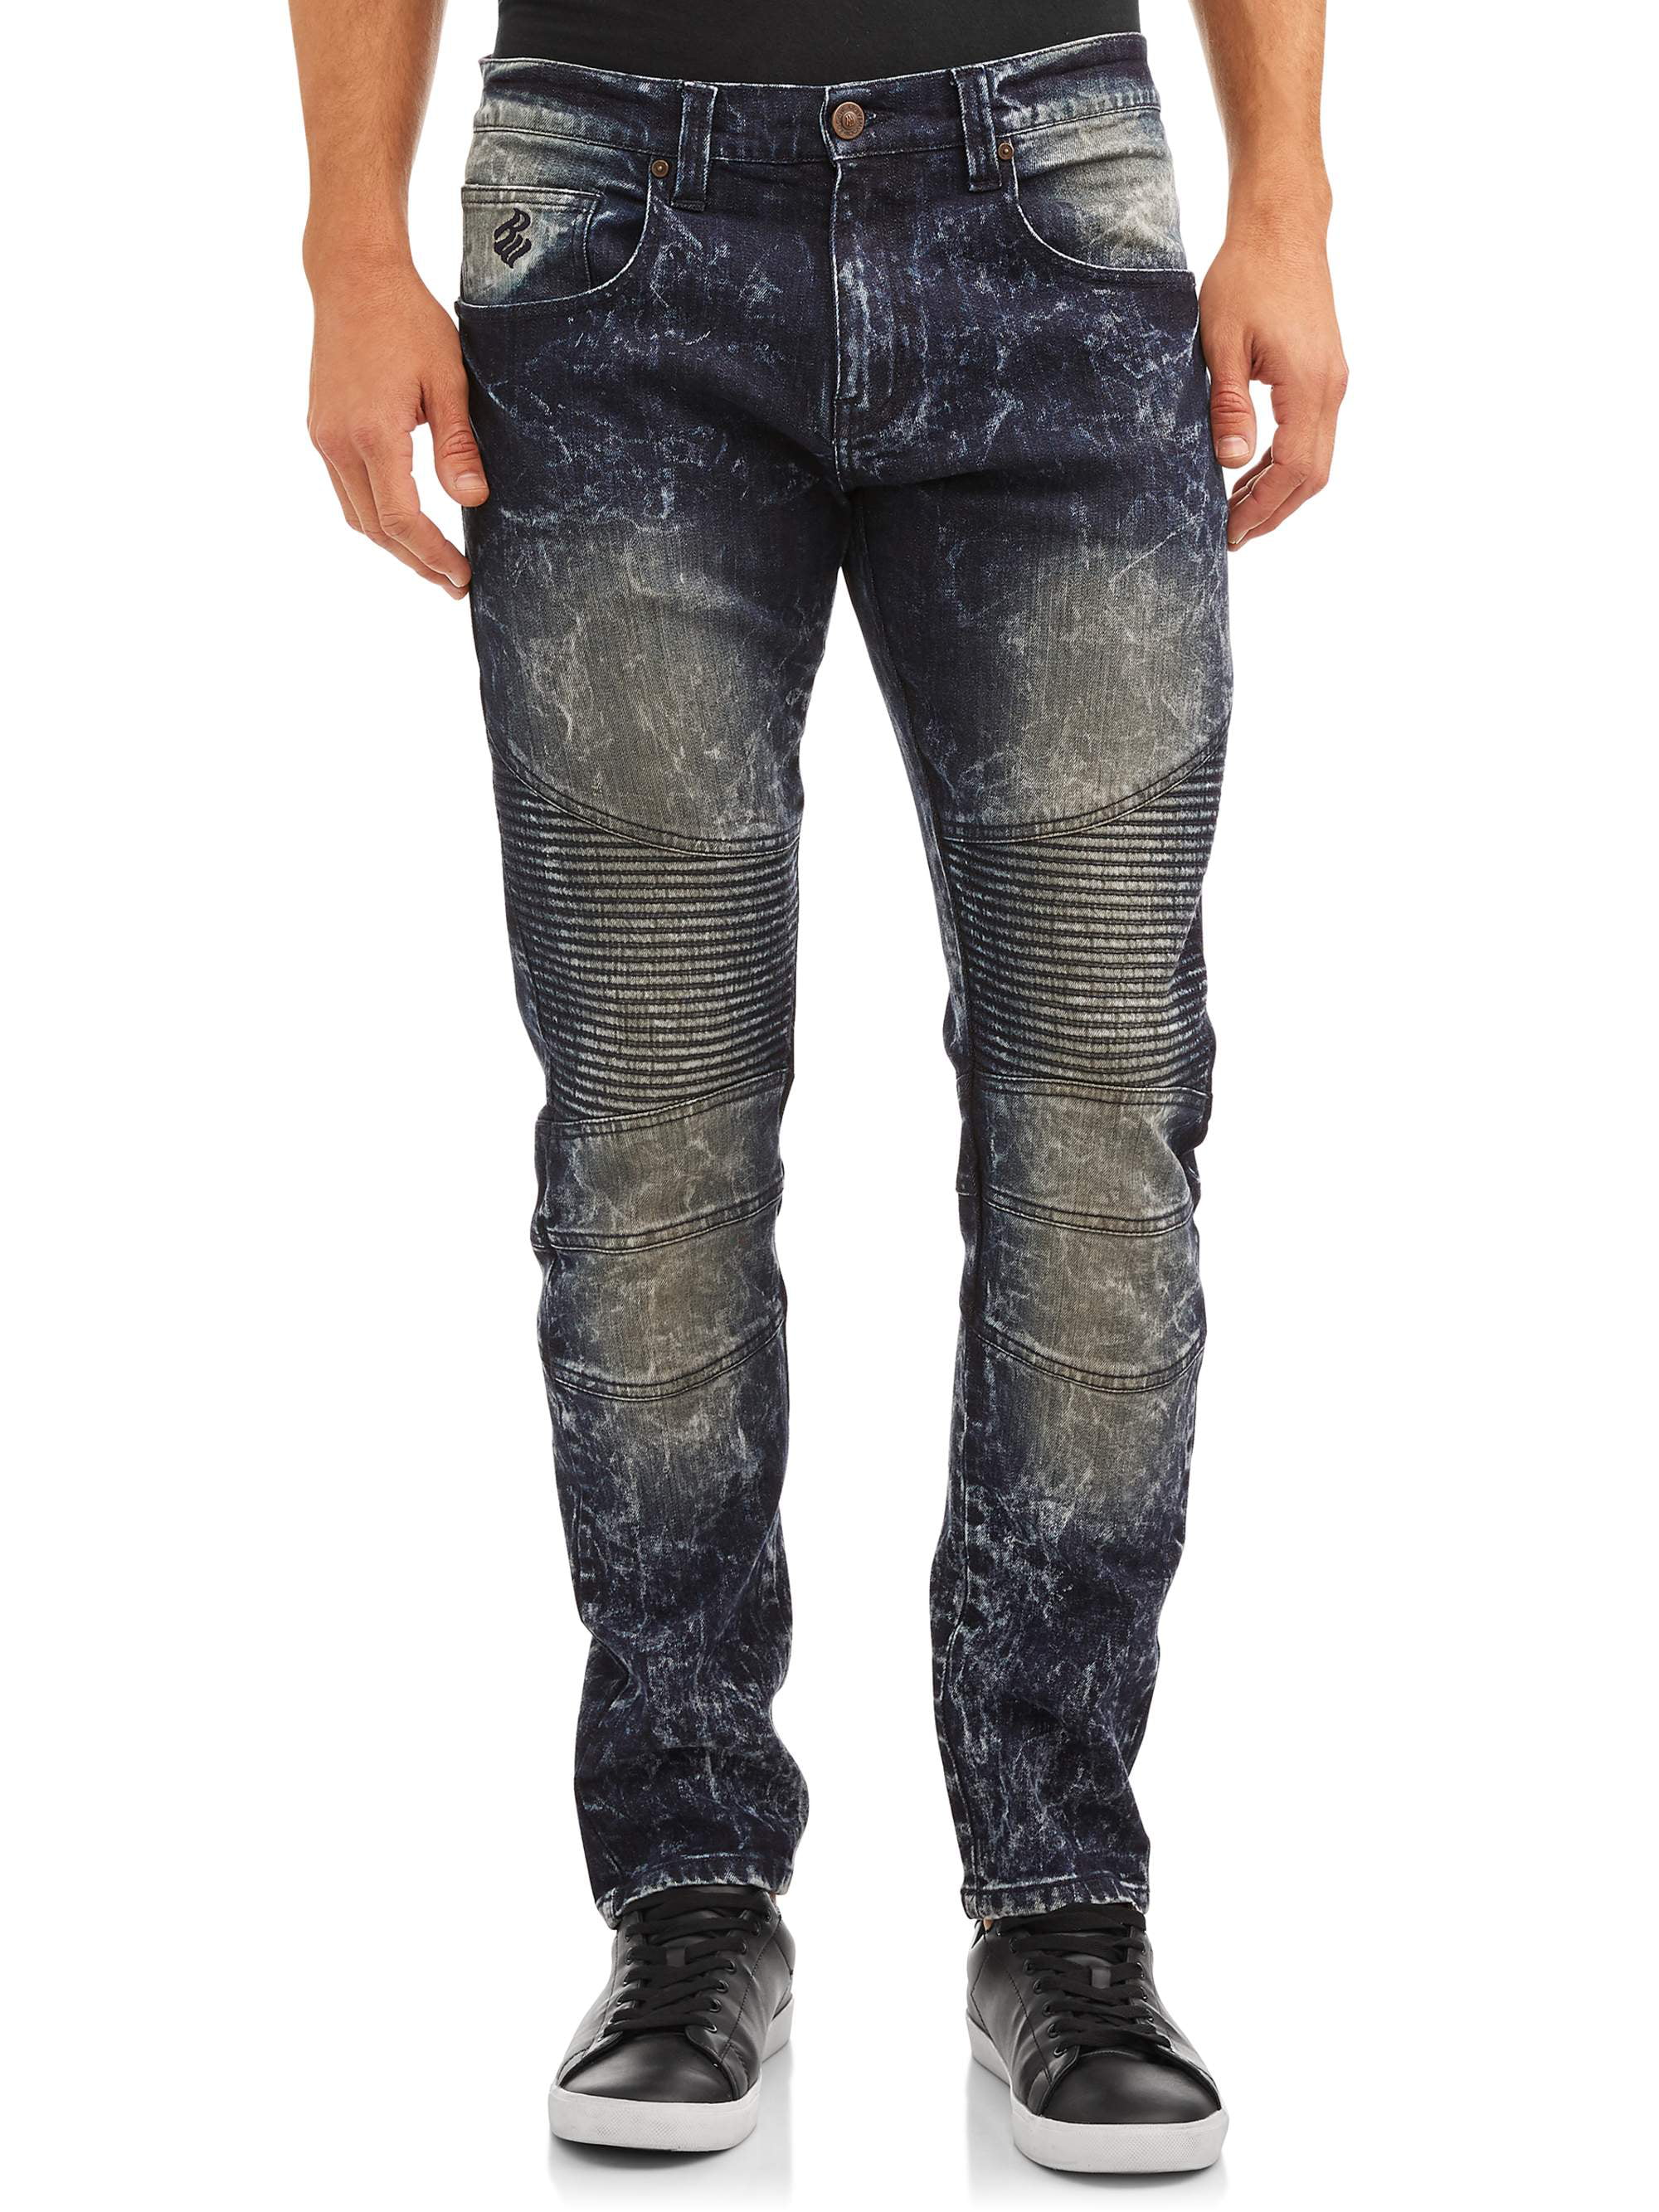 Ungdom tankevækkende kredsløb Rocawear Men's Trailblazer Slim Fit Jeans - Walmart.com